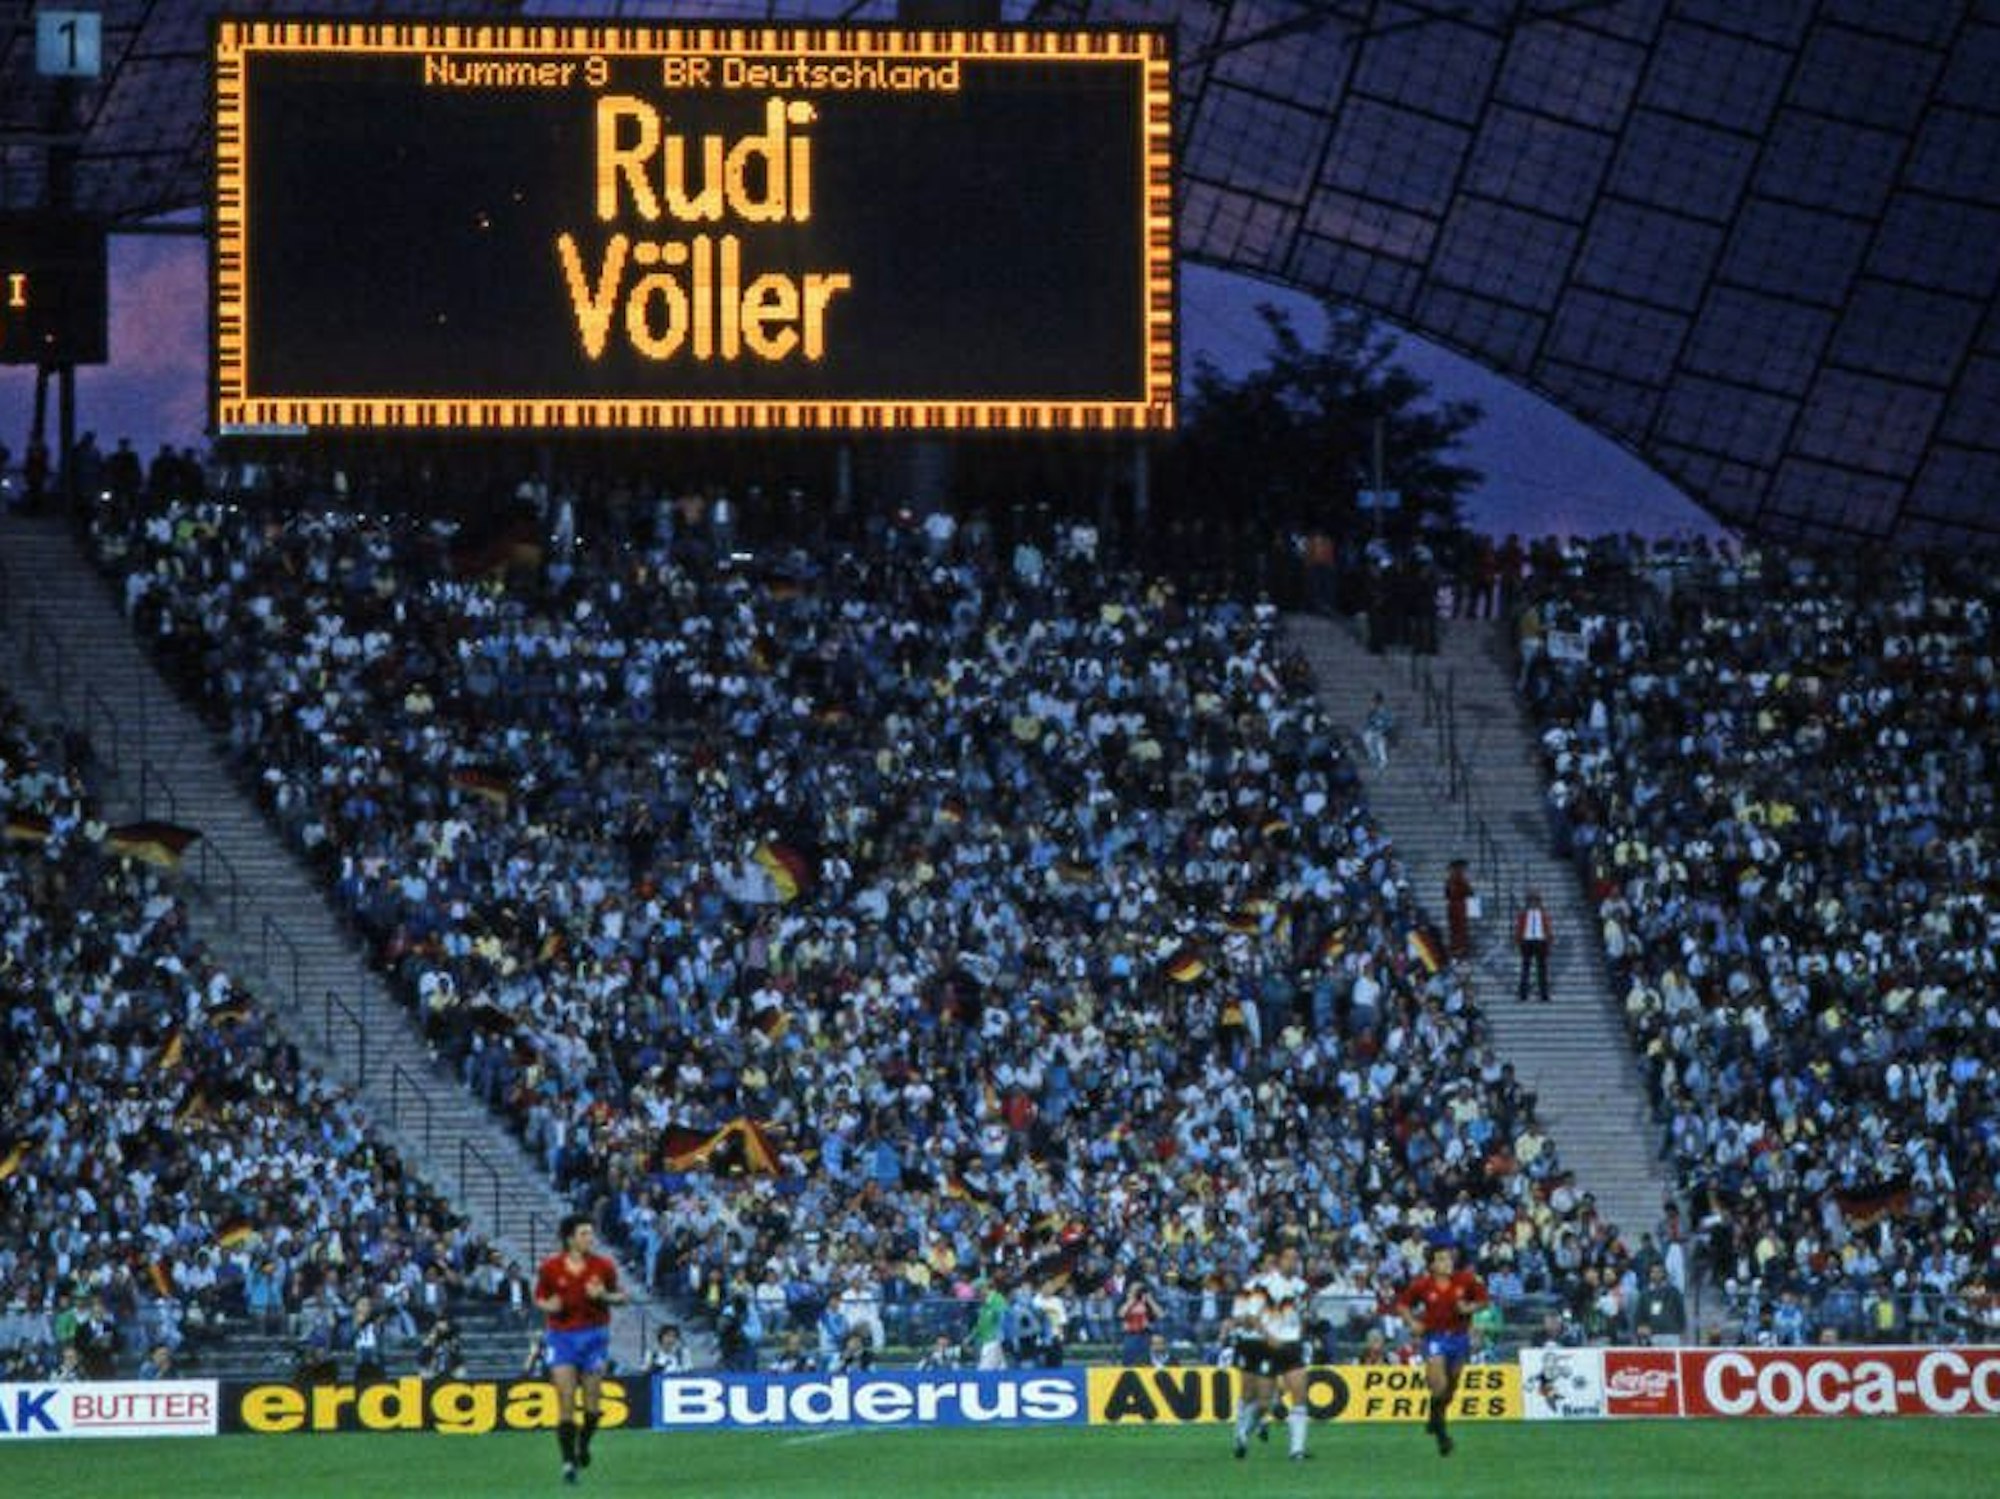 Die Anzeigetafel zeigt Rudi Völler als Torschützen.